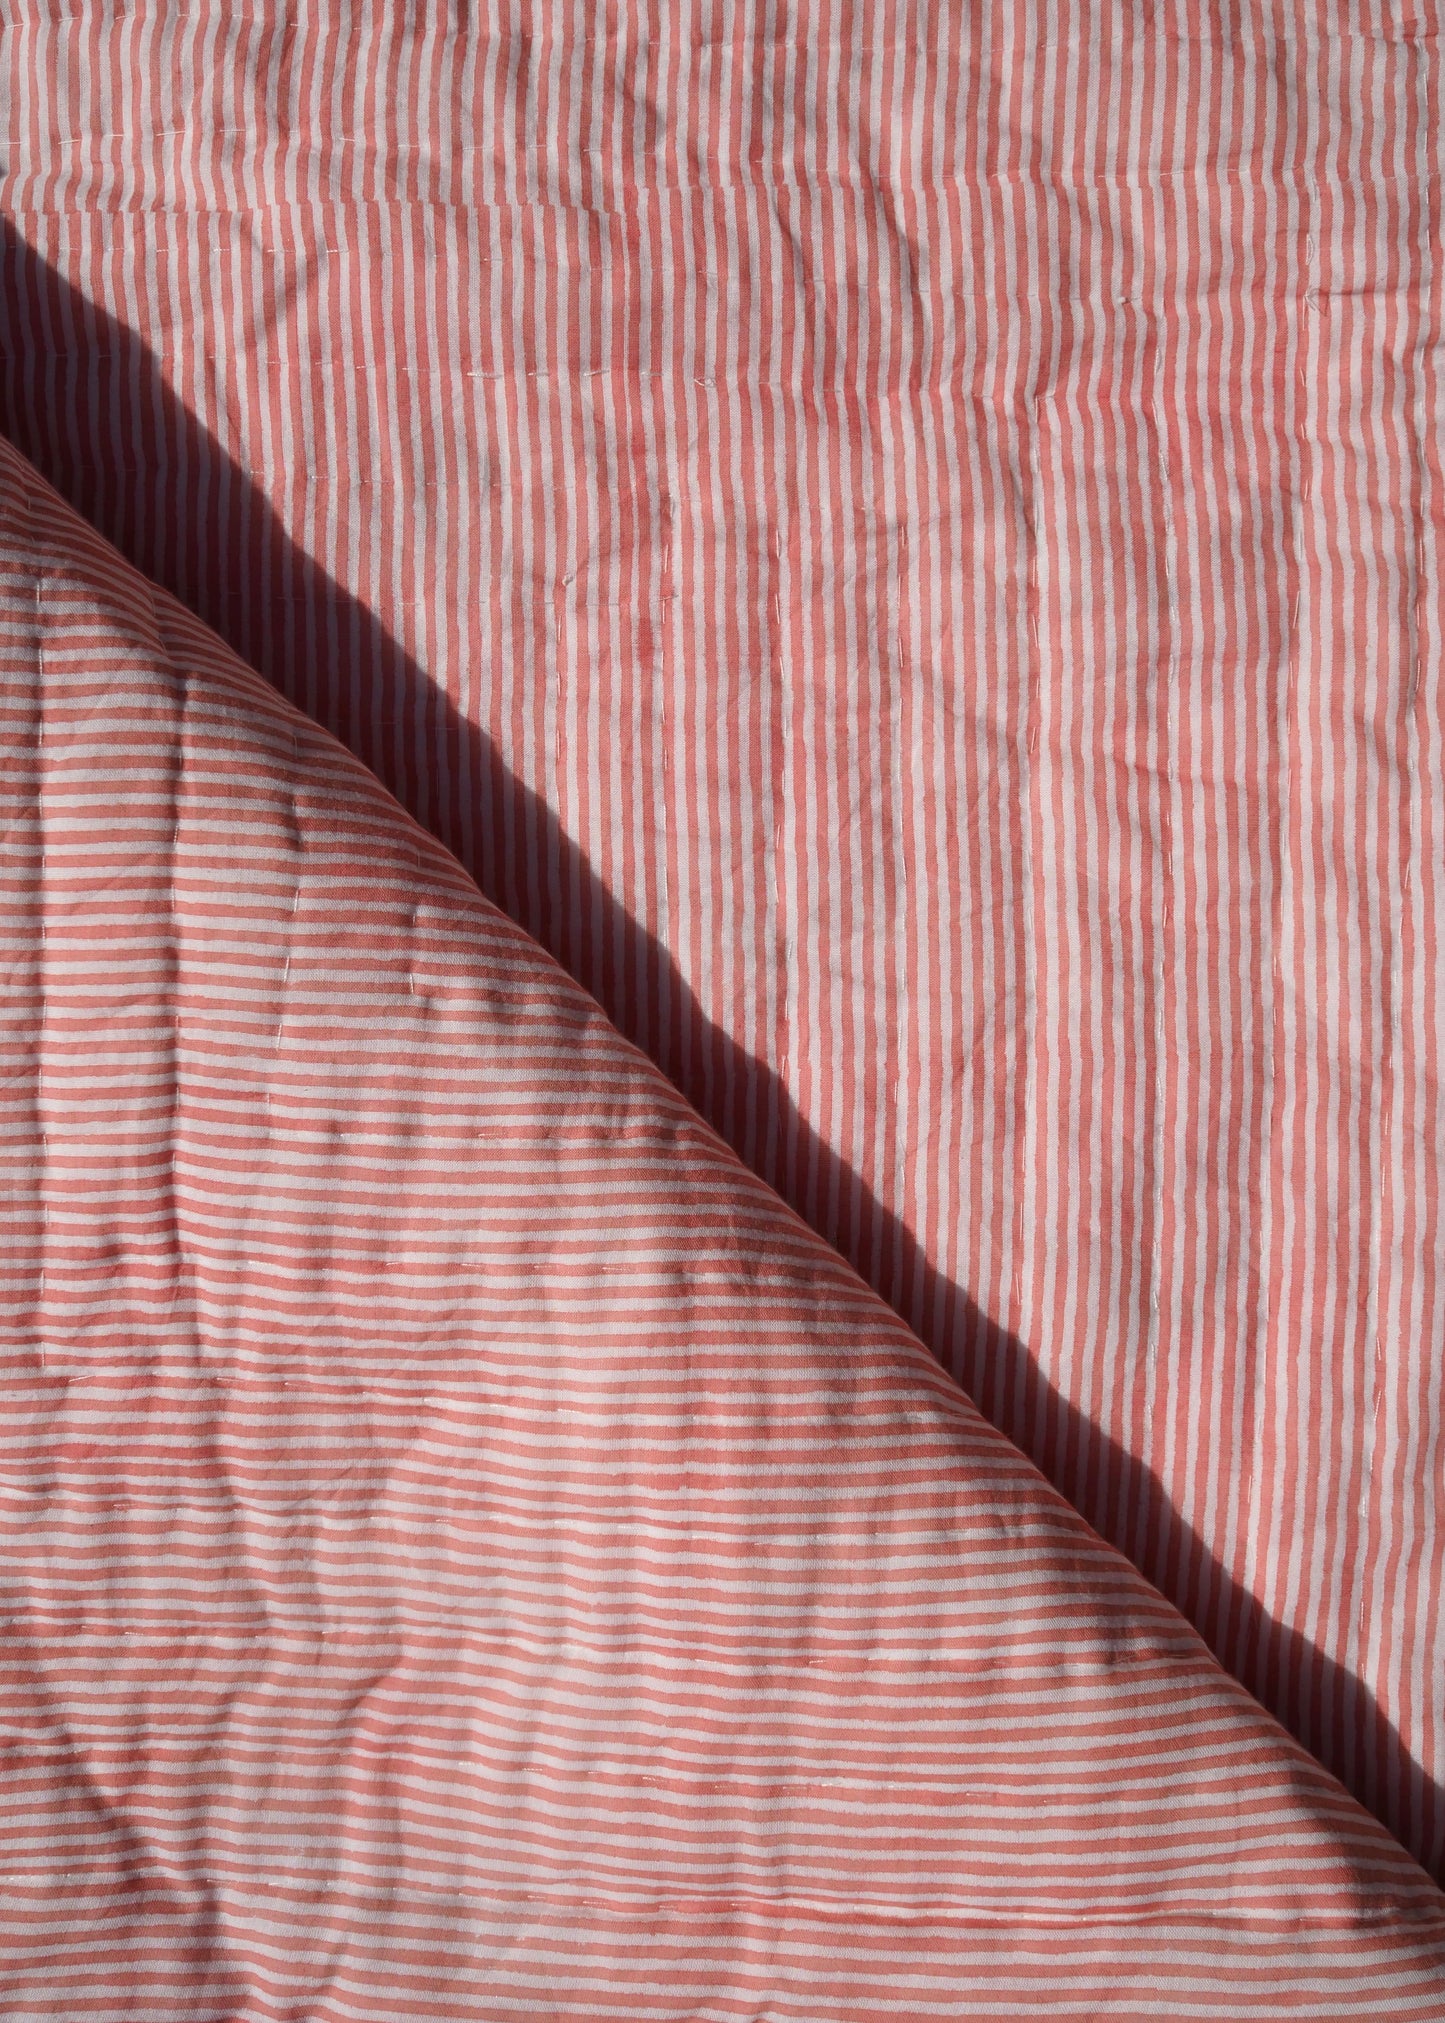 Pink Floral Summer Pique Bed Quilt